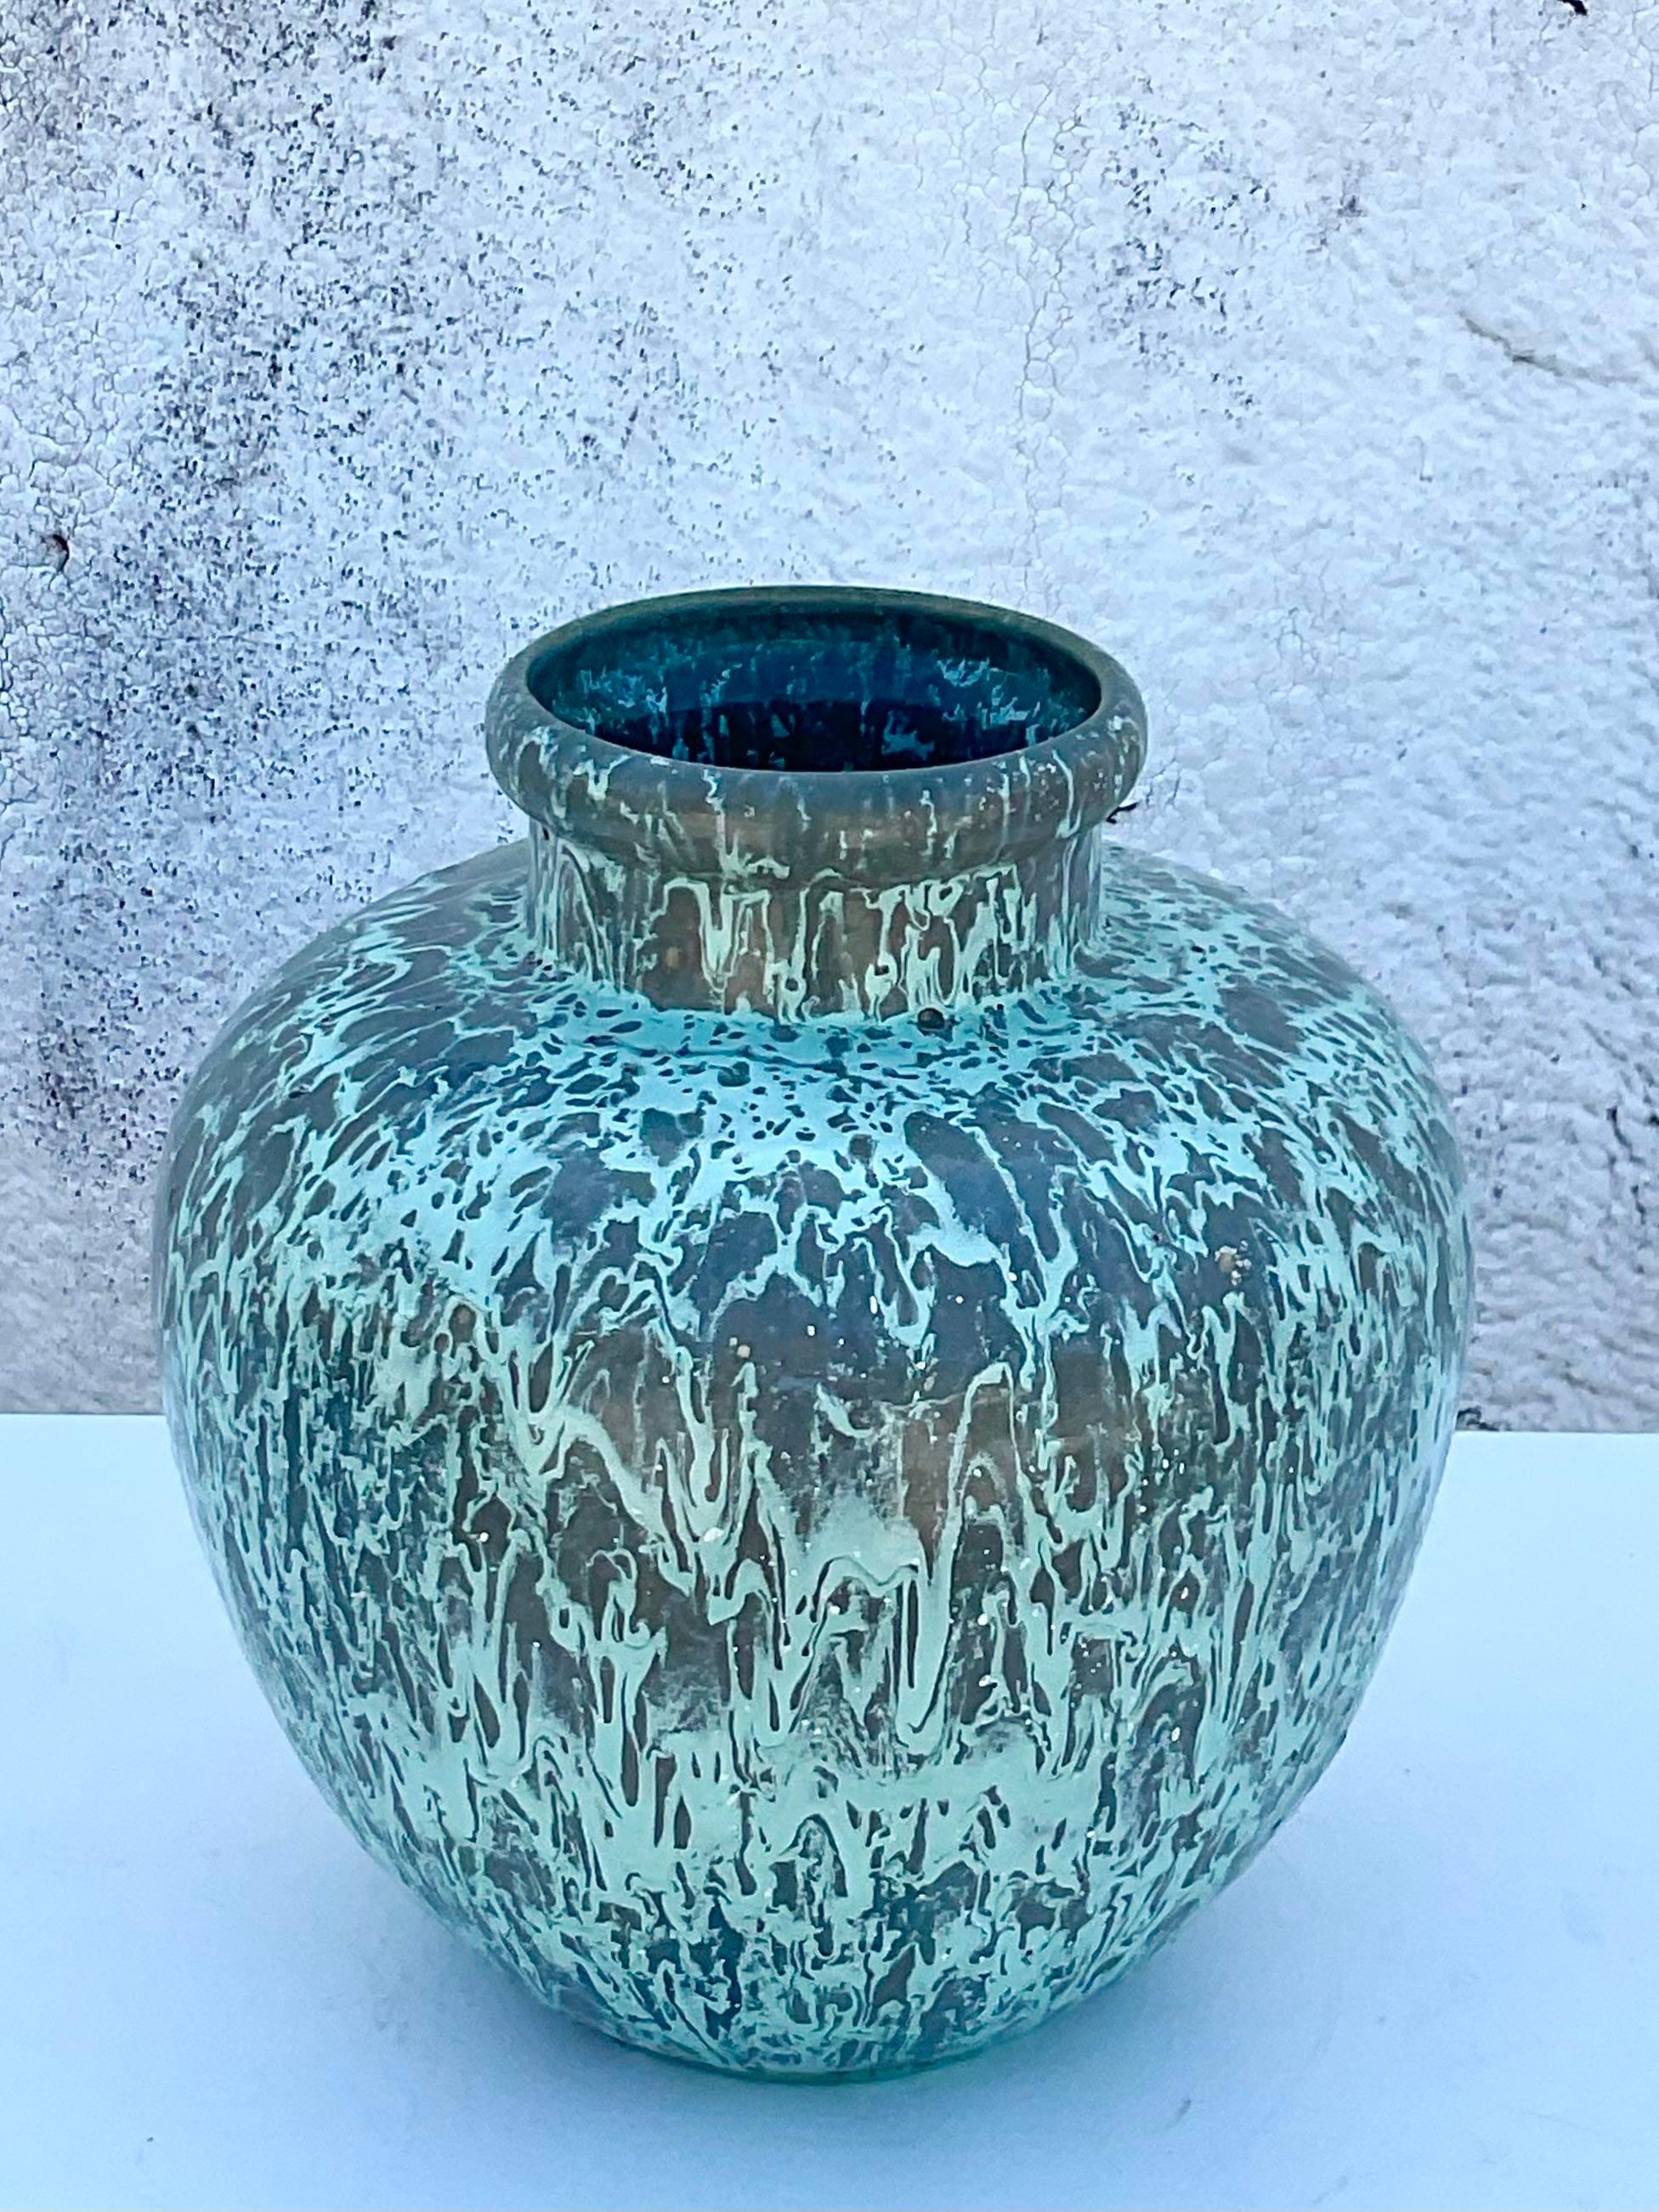 Fantastische handbemalte Splatter-Urne. Schöner Glanz in blassgrün und grau. Teil einer Urnensammlung, die auch auf meiner Chairish-Seite erhältlich ist. Erworben aus einem Nachlass in Palm Beach.